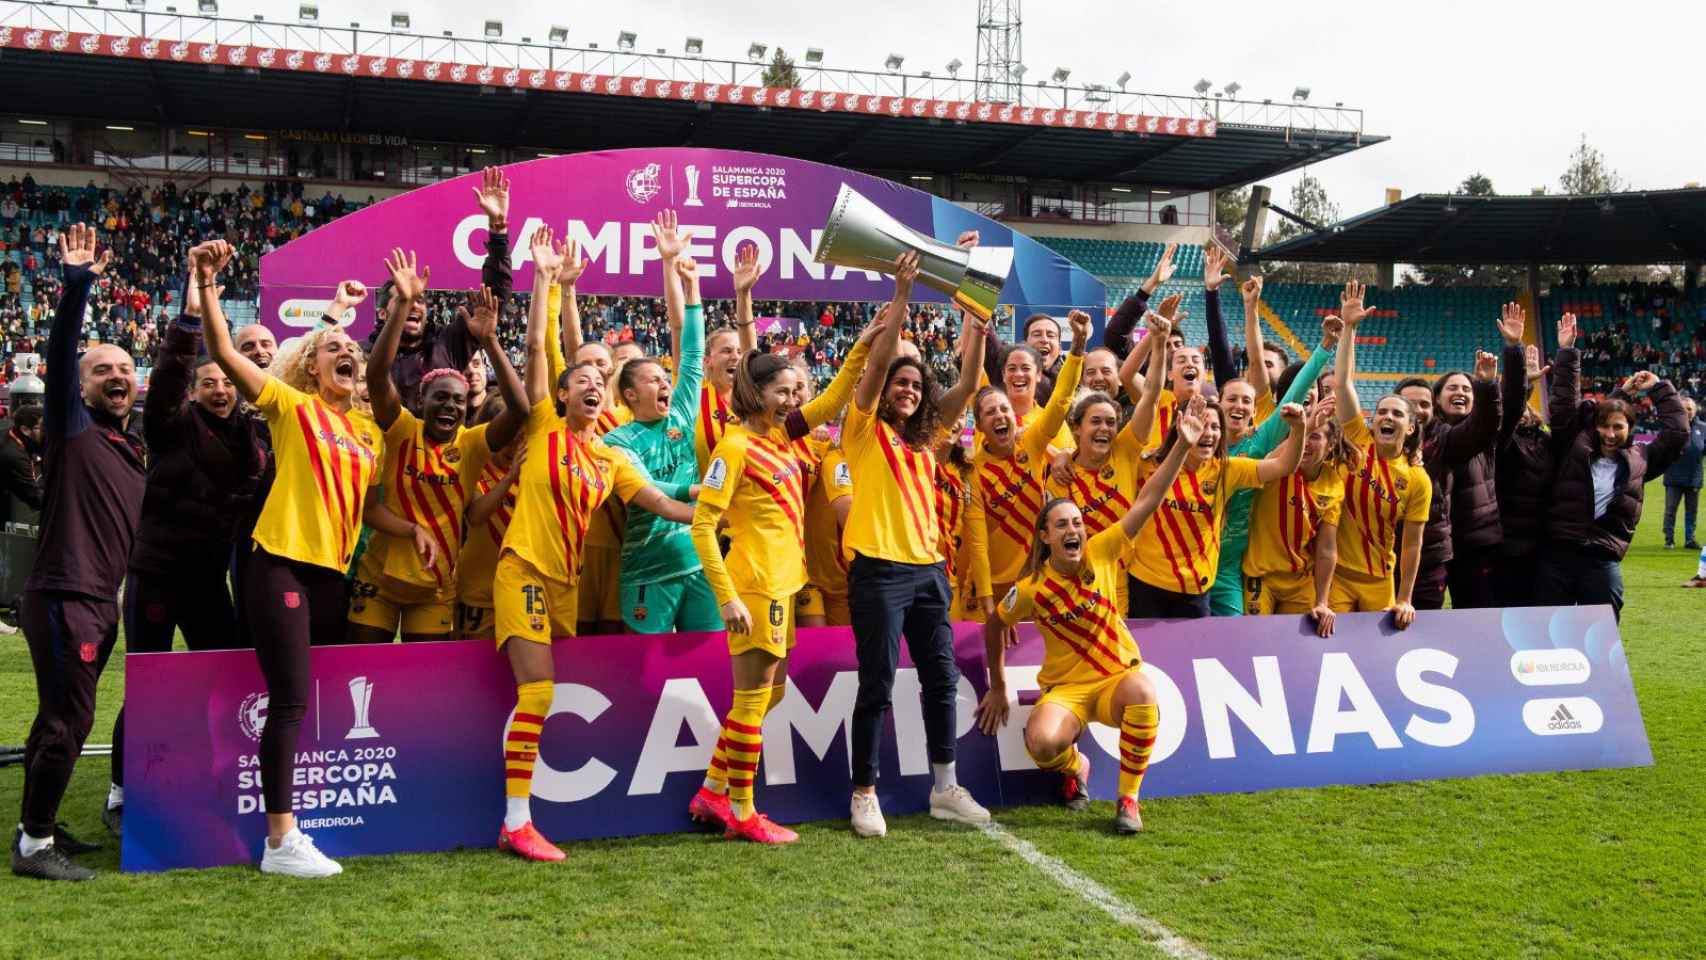 Las jugadoras del Barça levantan el título de la Supercopa de España / FCB